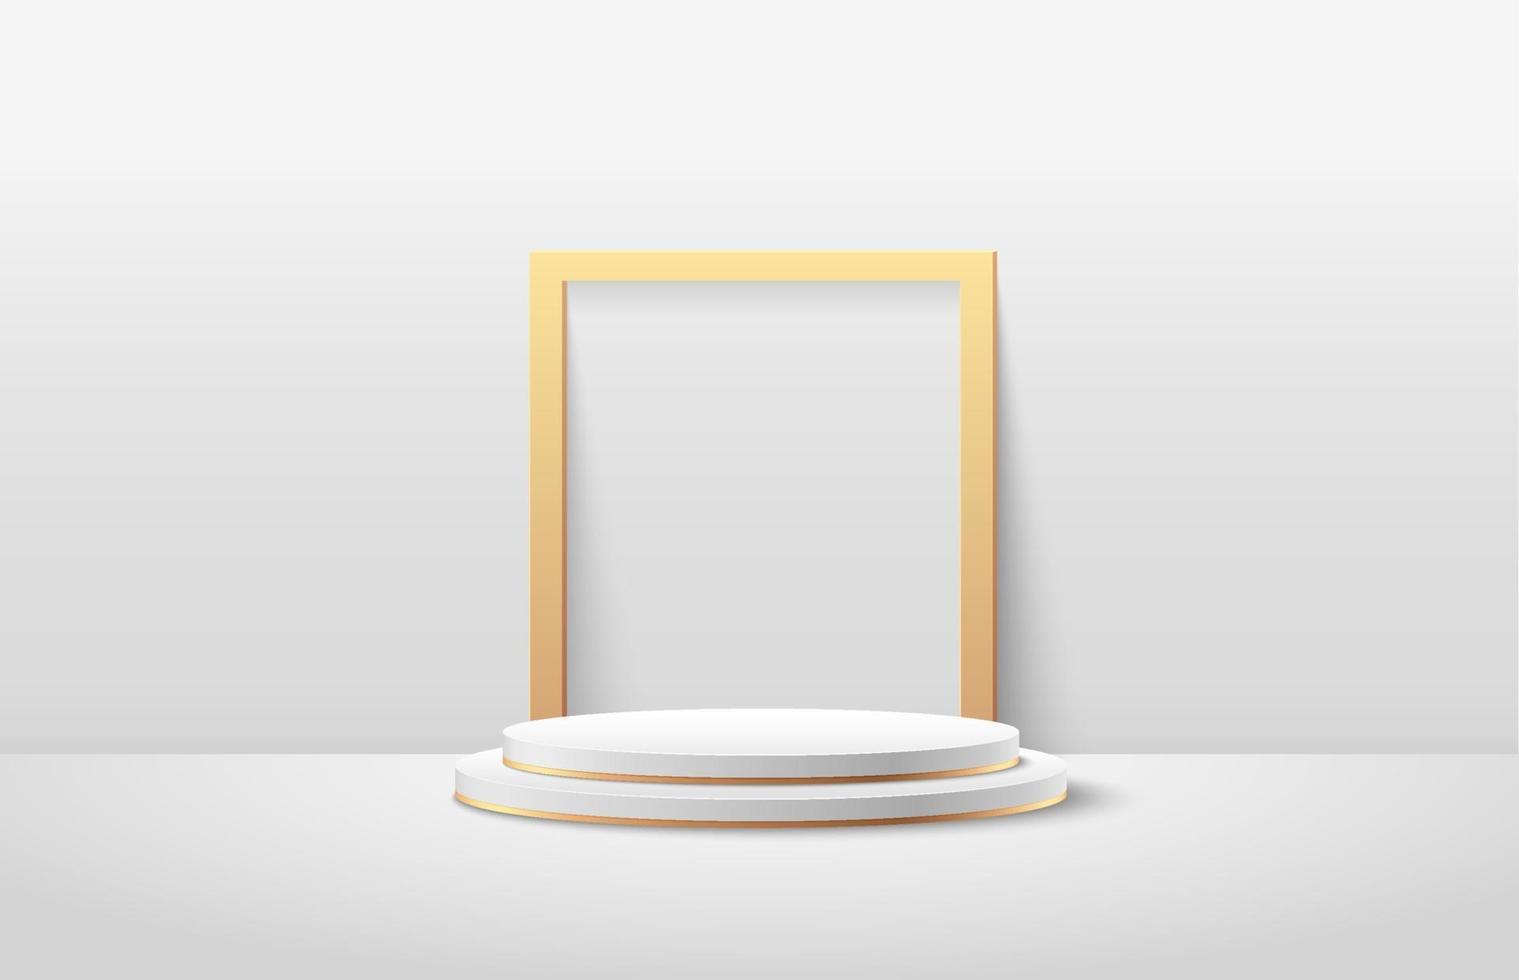 display rotondo astratto per prodotto sul sito Web in chiave moderna. rendering di sfondo con podio e bianco minimo, scena di muro con texture oro, colore bianco di forma geometrica di rendering 3d di lusso. vettore eps10